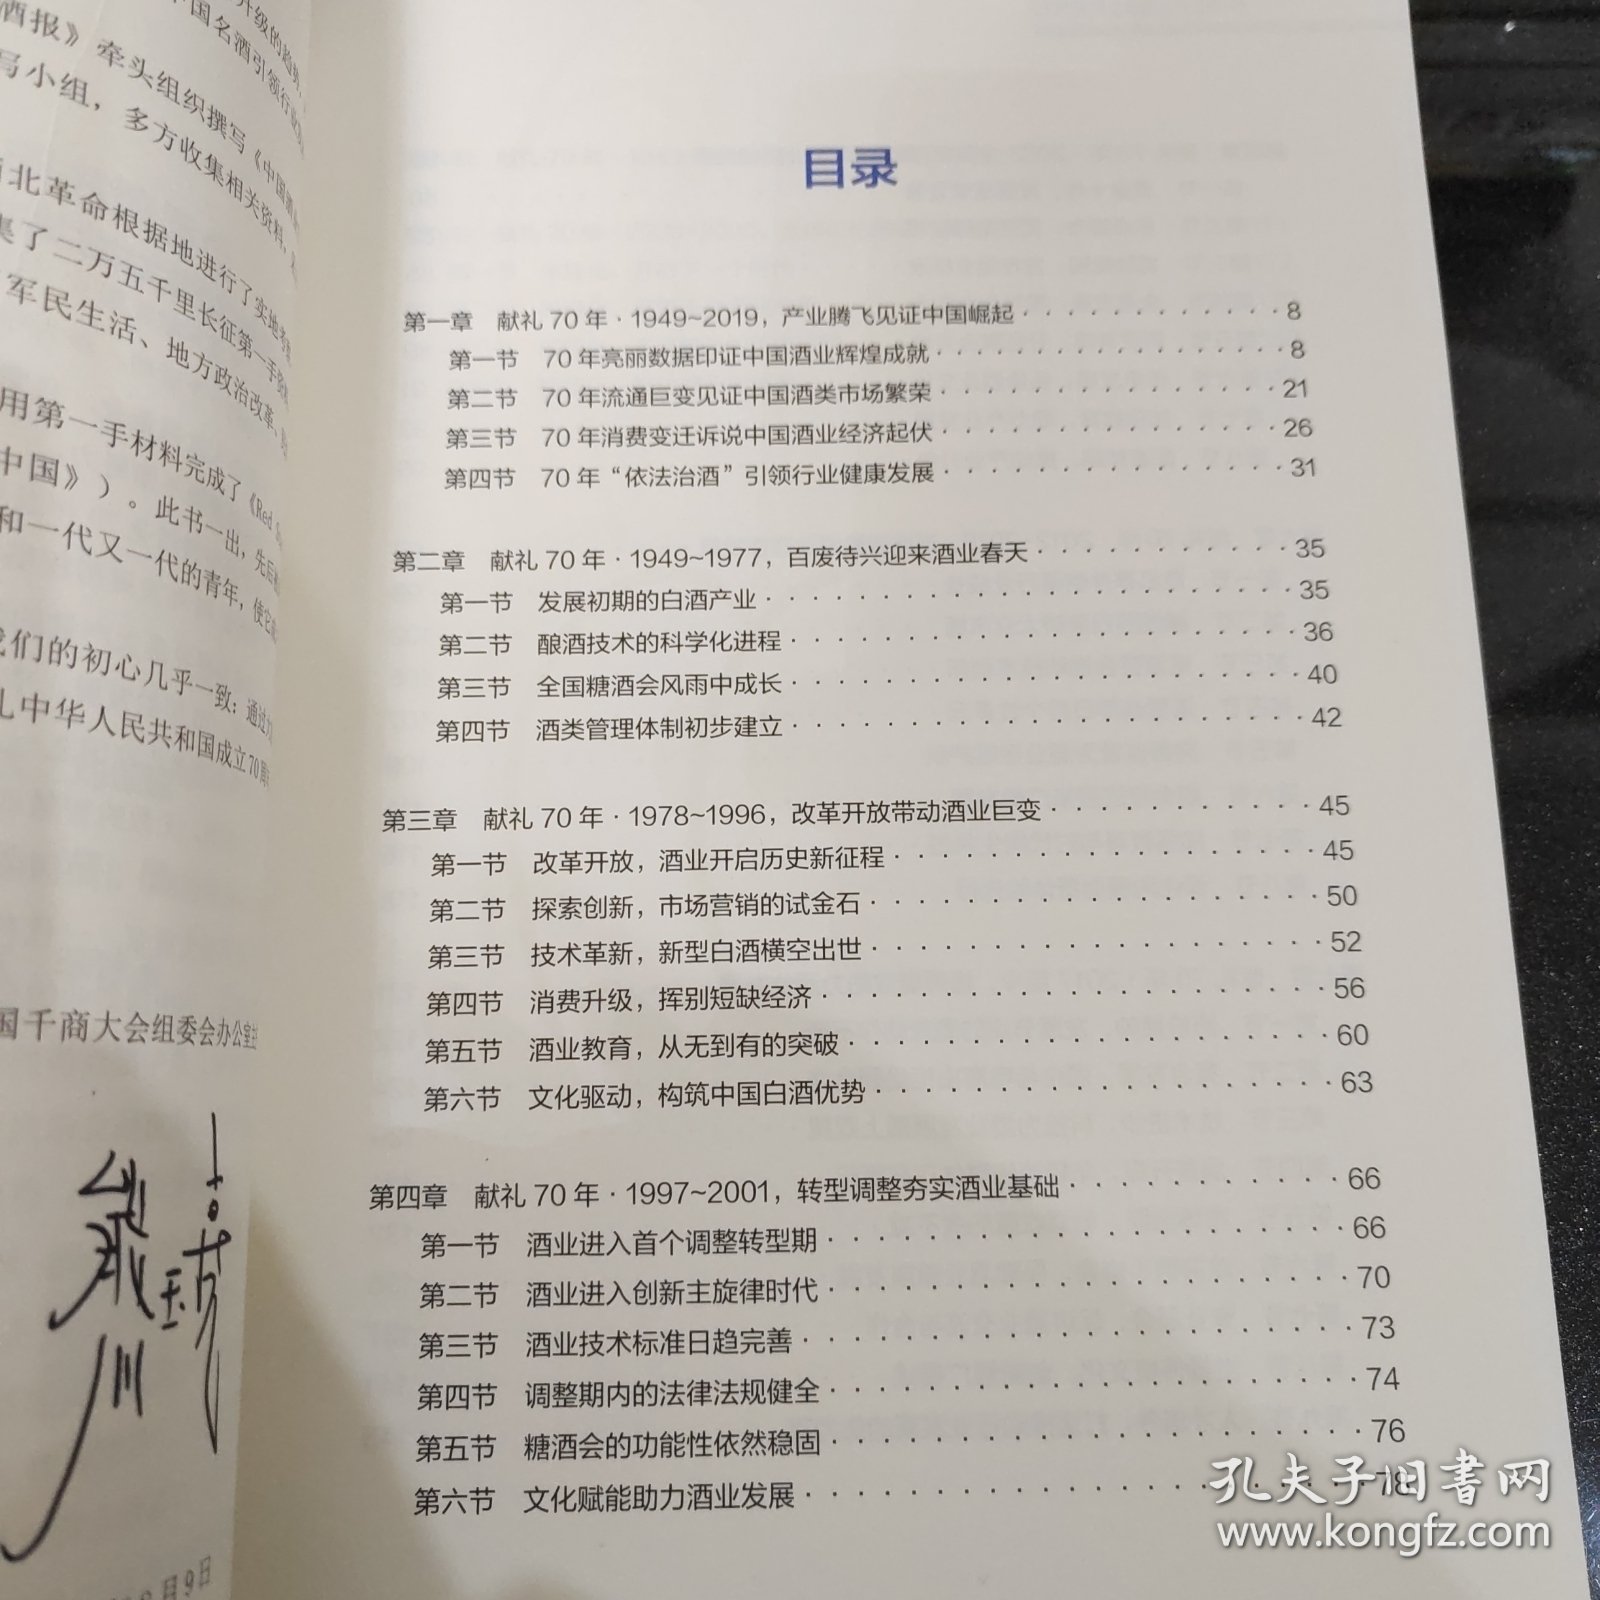 2019 中国酒业白皮书